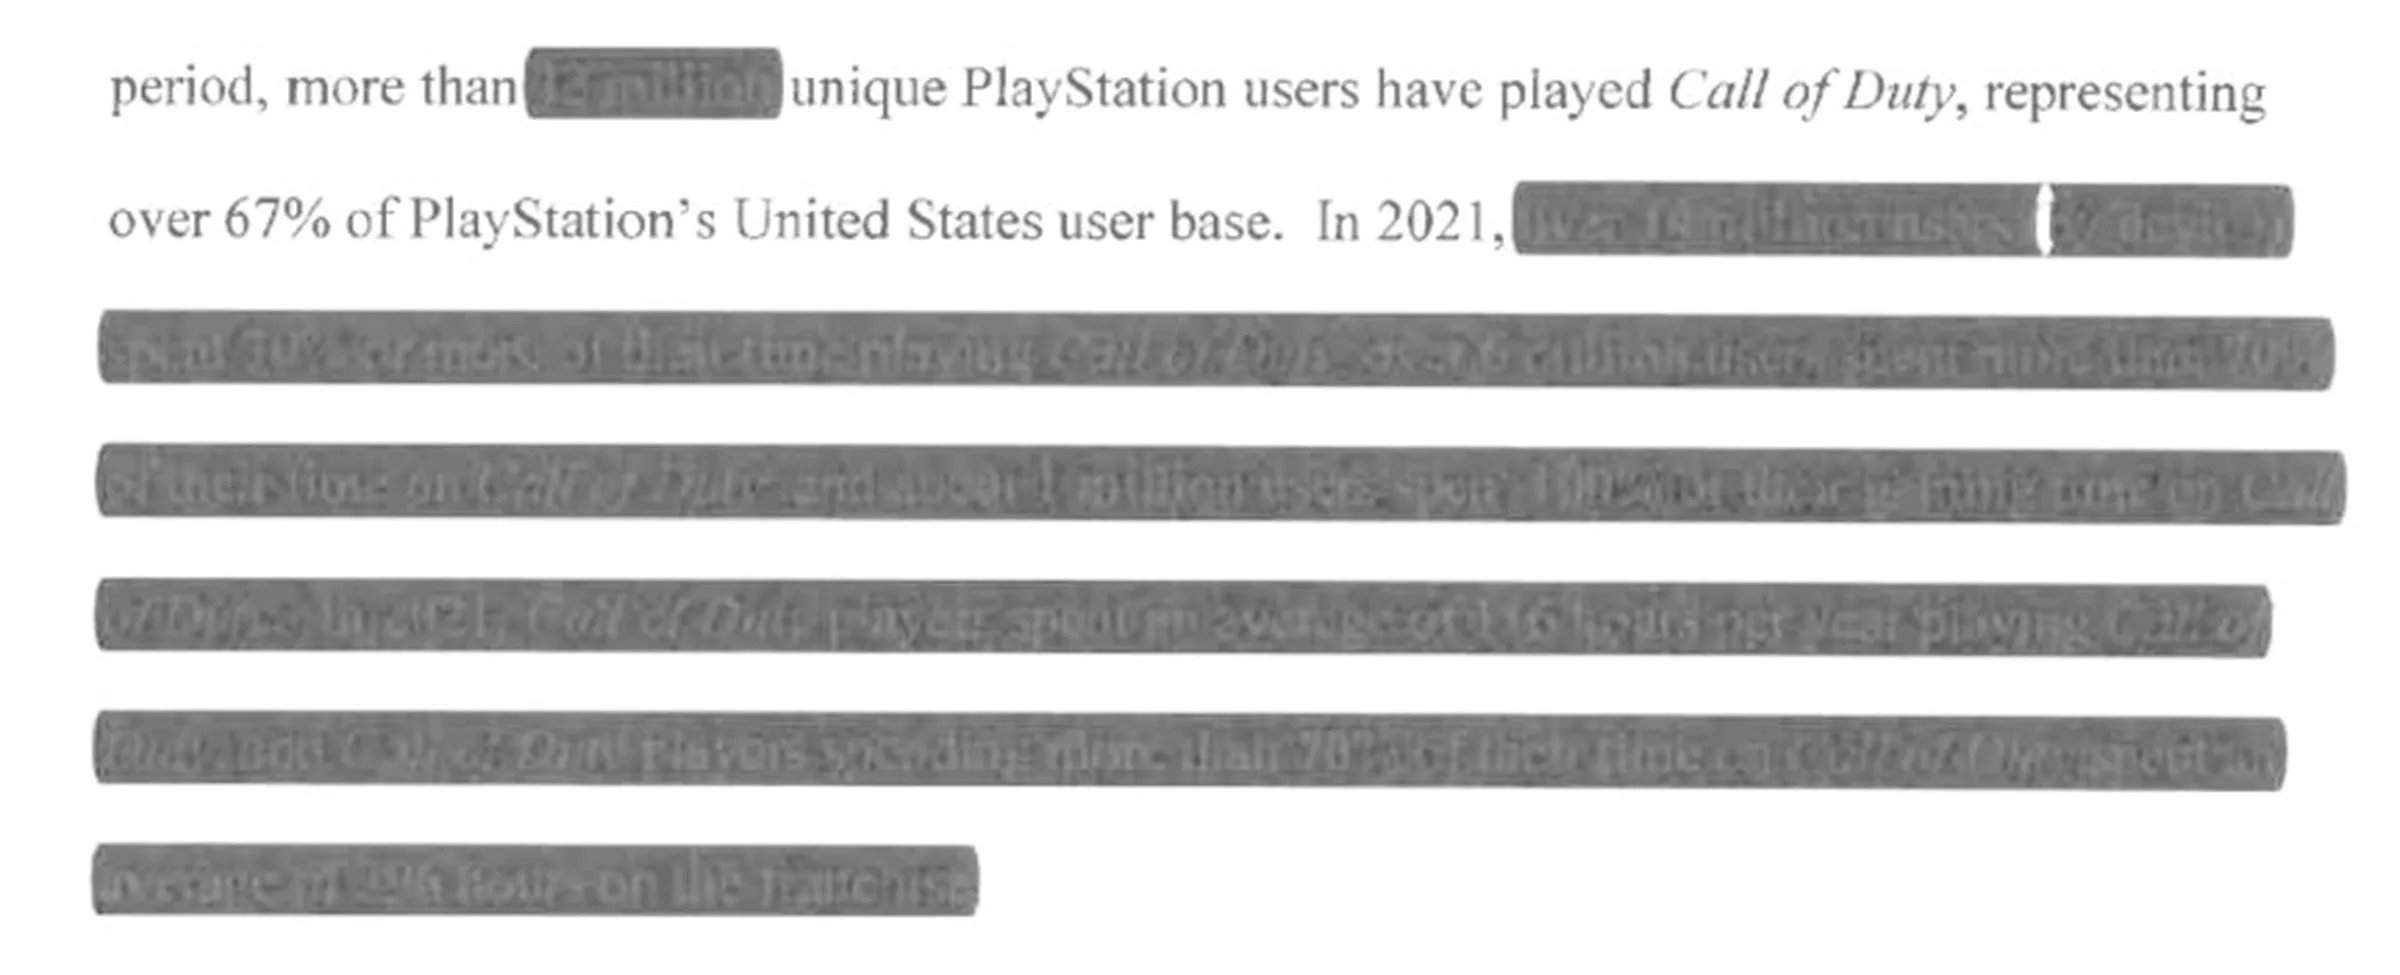 Playstation про важность Call of Duty: около 1 миллиона игроков в США проводят в ней 100% времени в году: с сайта NEWXBOXONE.RU